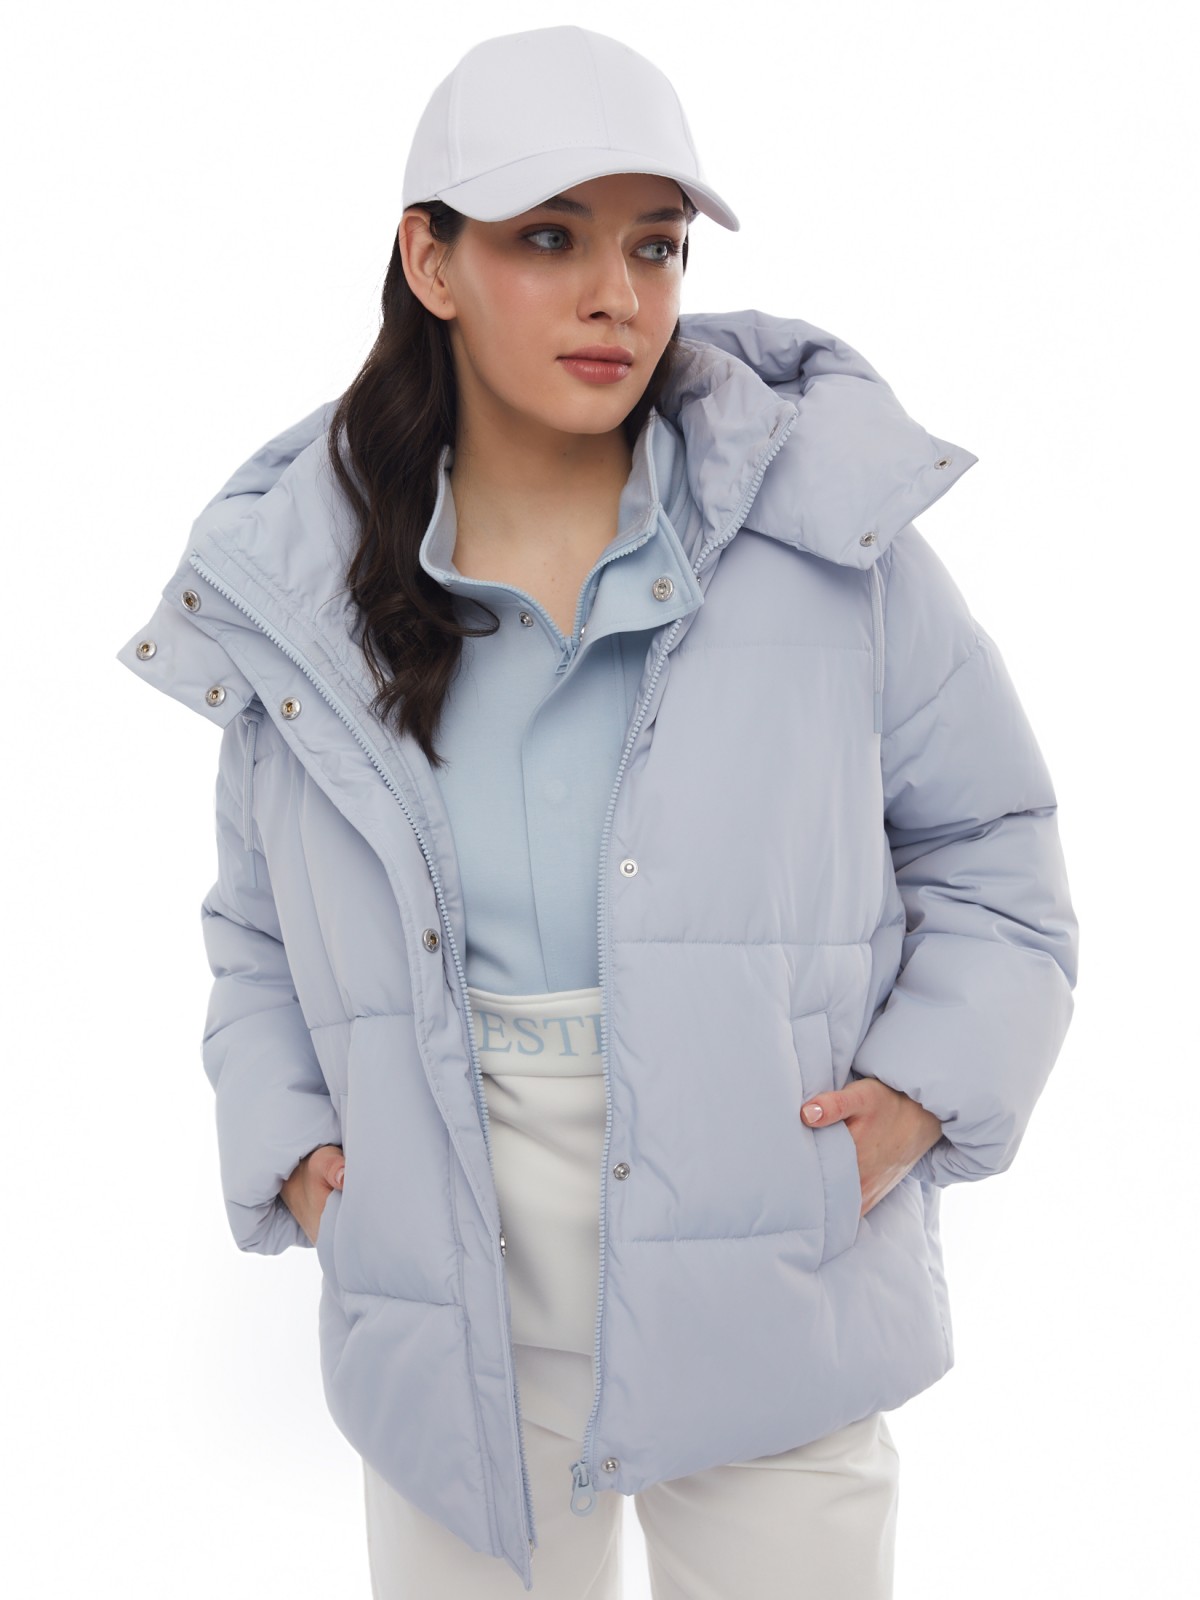 Тёплая укороченная дутая куртка с капюшоном zolla 024125112434, цвет светло-голубой, размер XS